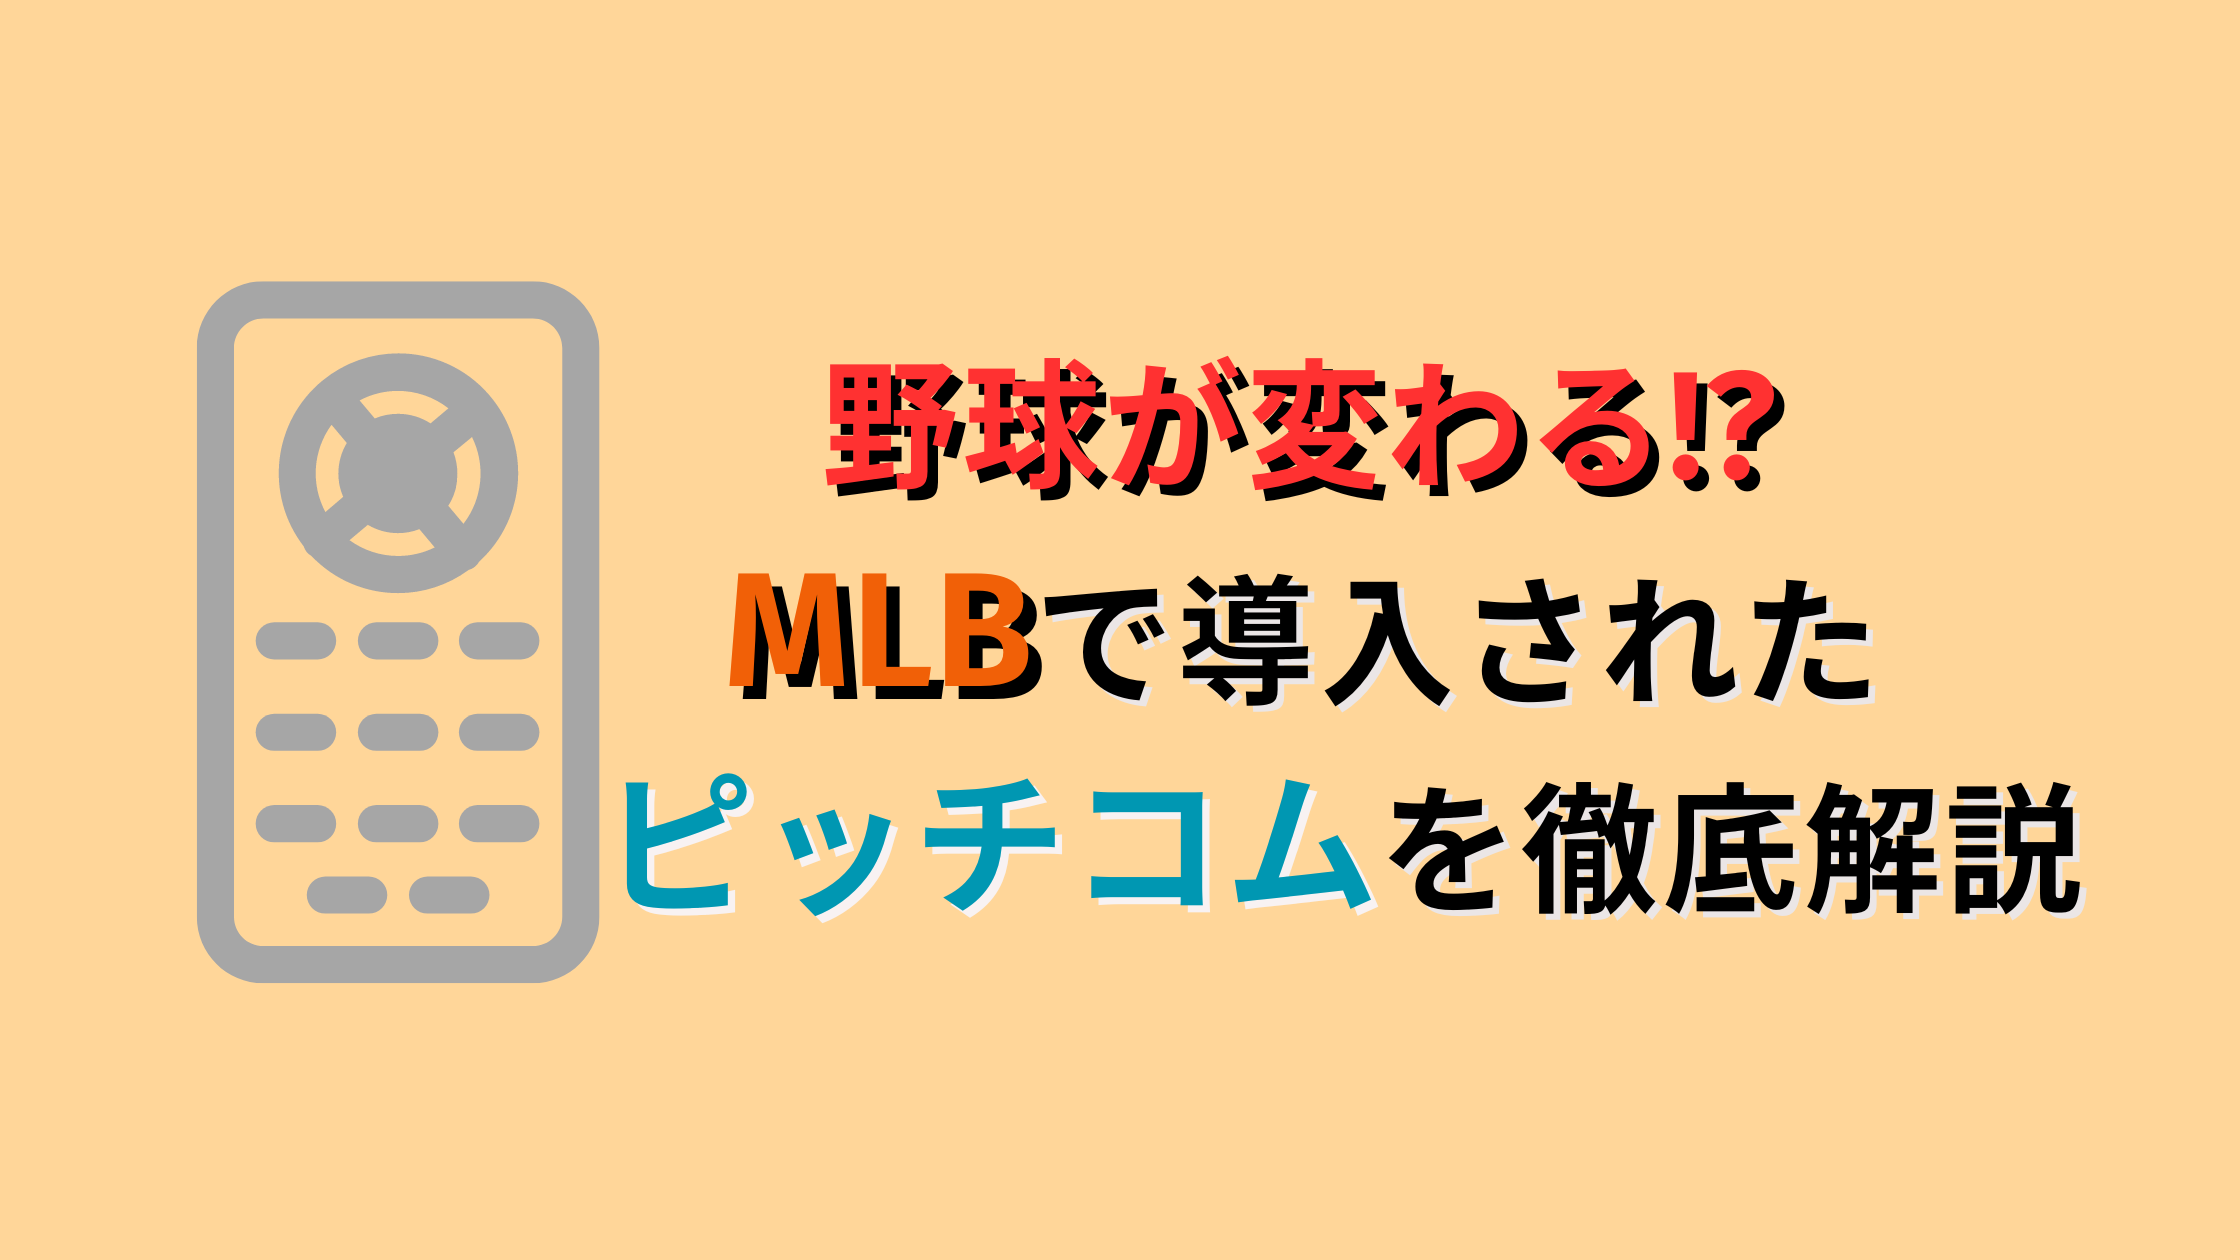 【野球が変わる】ピッチコムとは?使い方は?MLBに続いて日本にも導入?